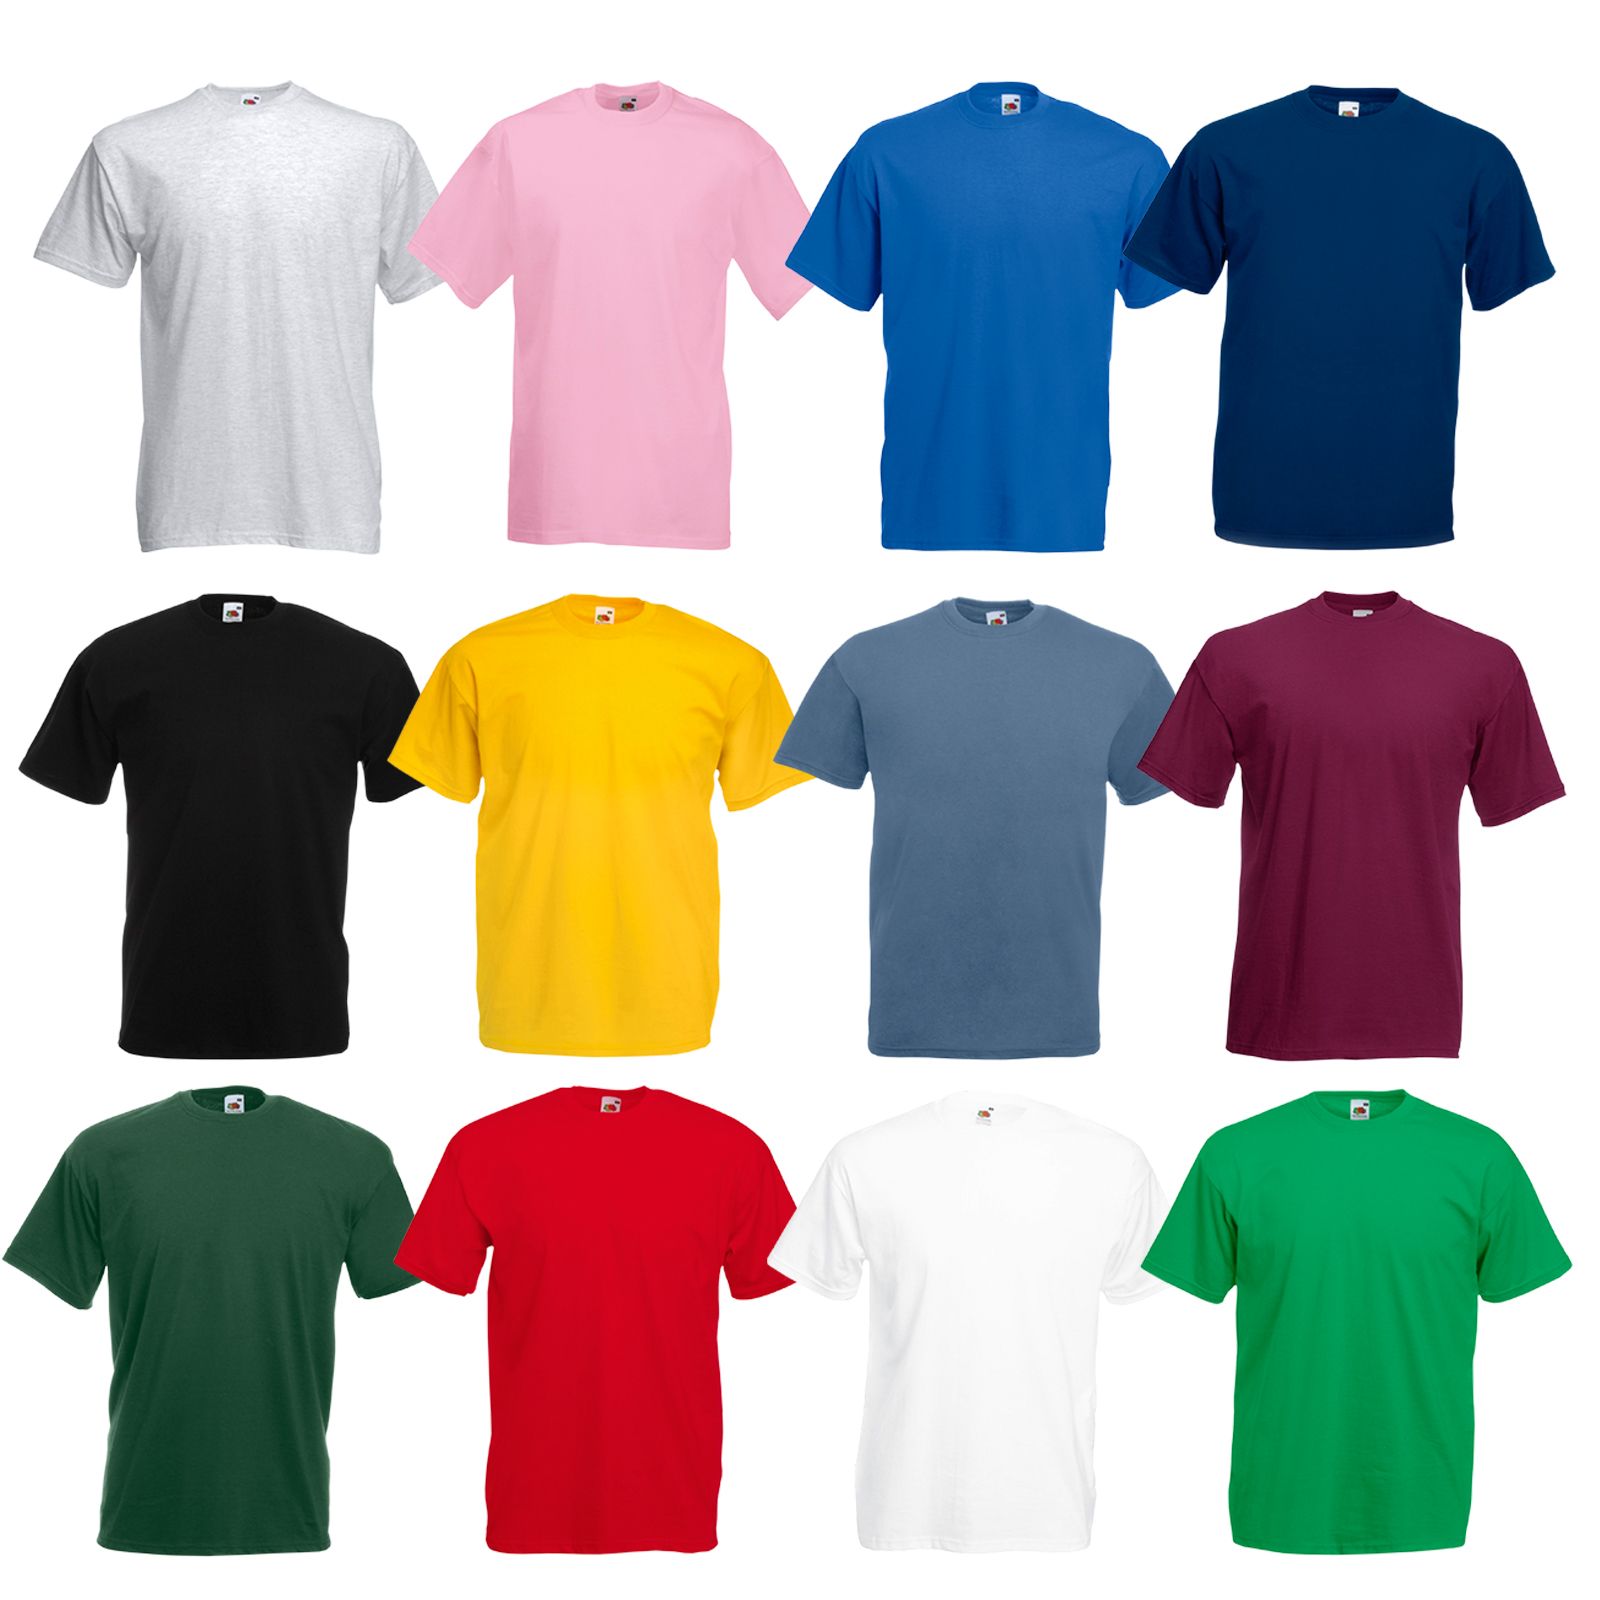 Wholesale Tee Shirts, Bulk, Plain Blank T Shirts